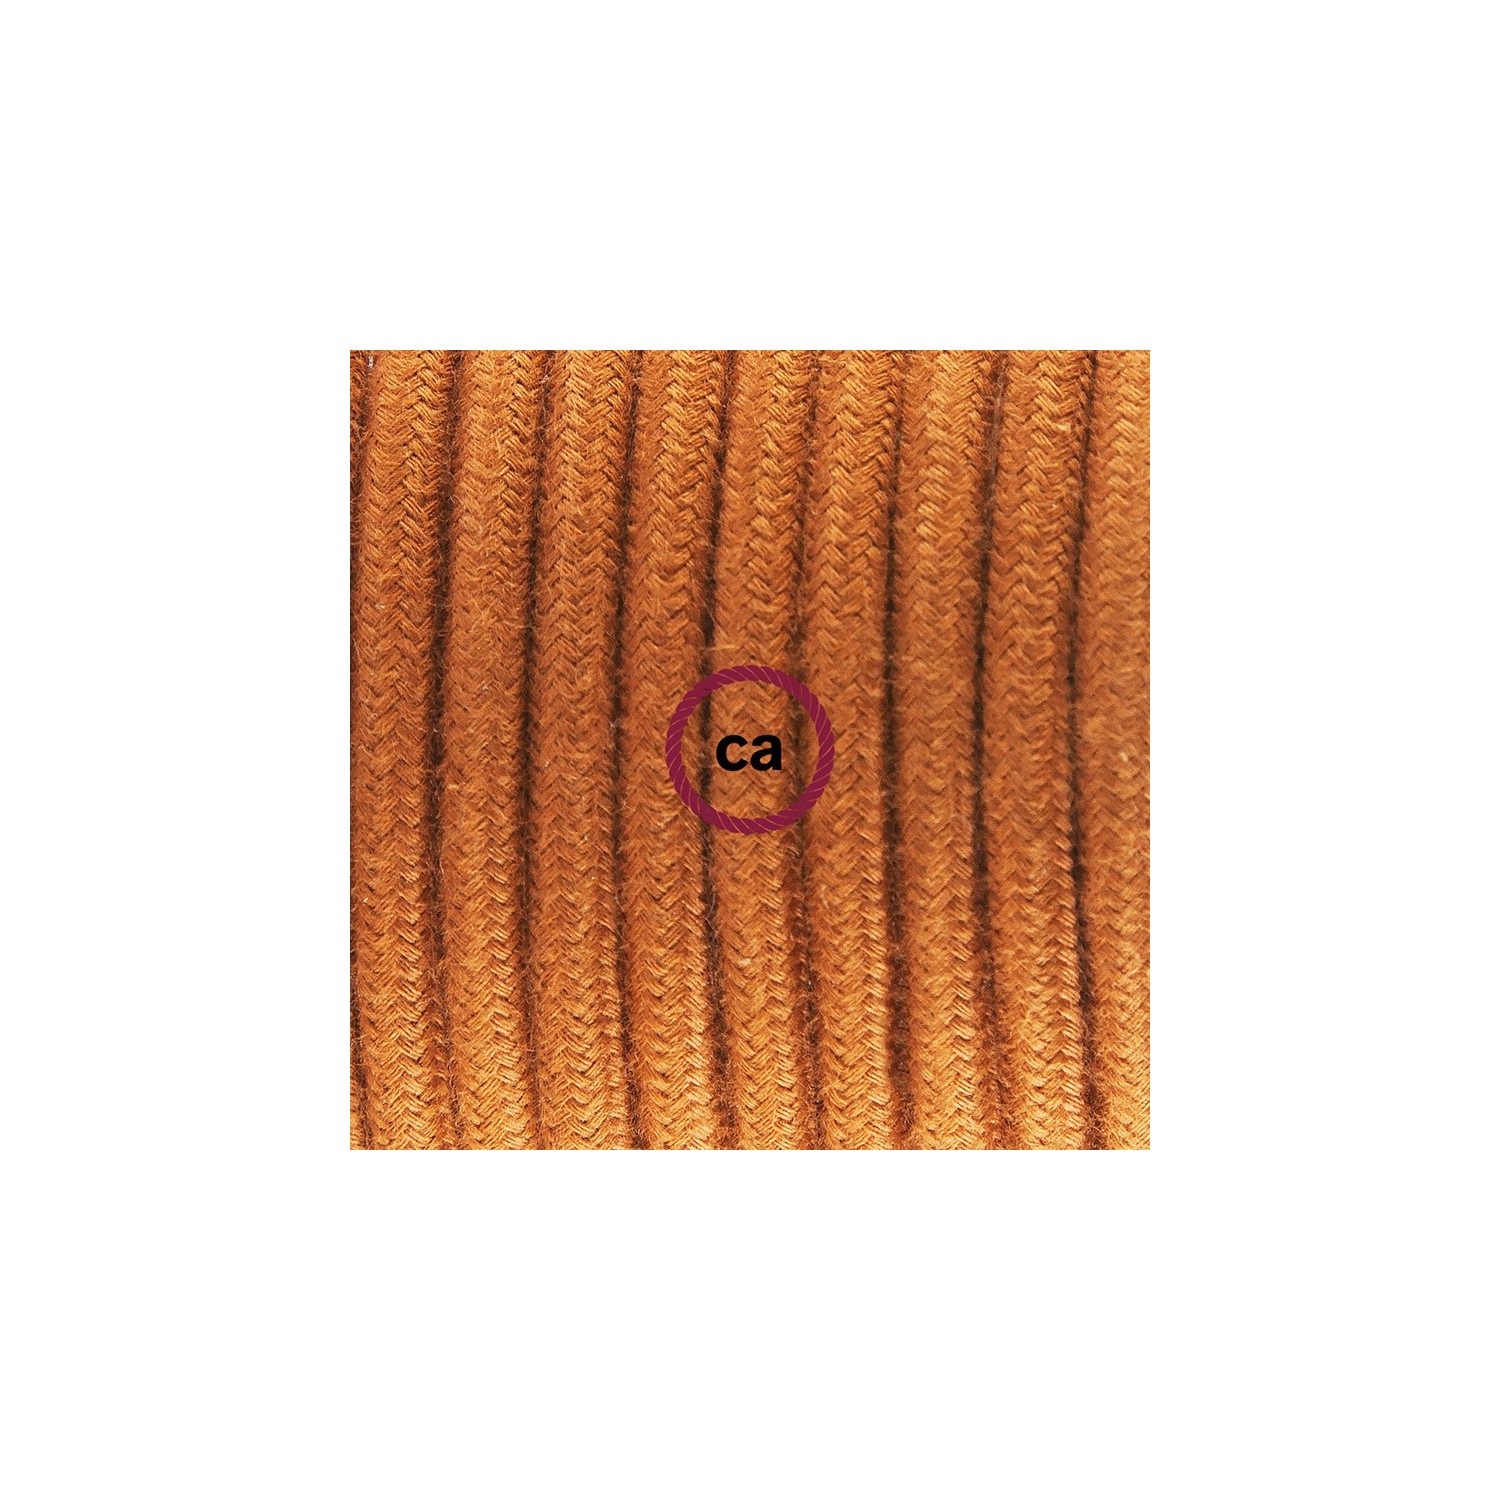 Zuleitung für Tischleuchten RC23 Damhirsch Baumwolle 1,80 m. Wählen Sie aus drei Farben bei Schalter und Stecke.